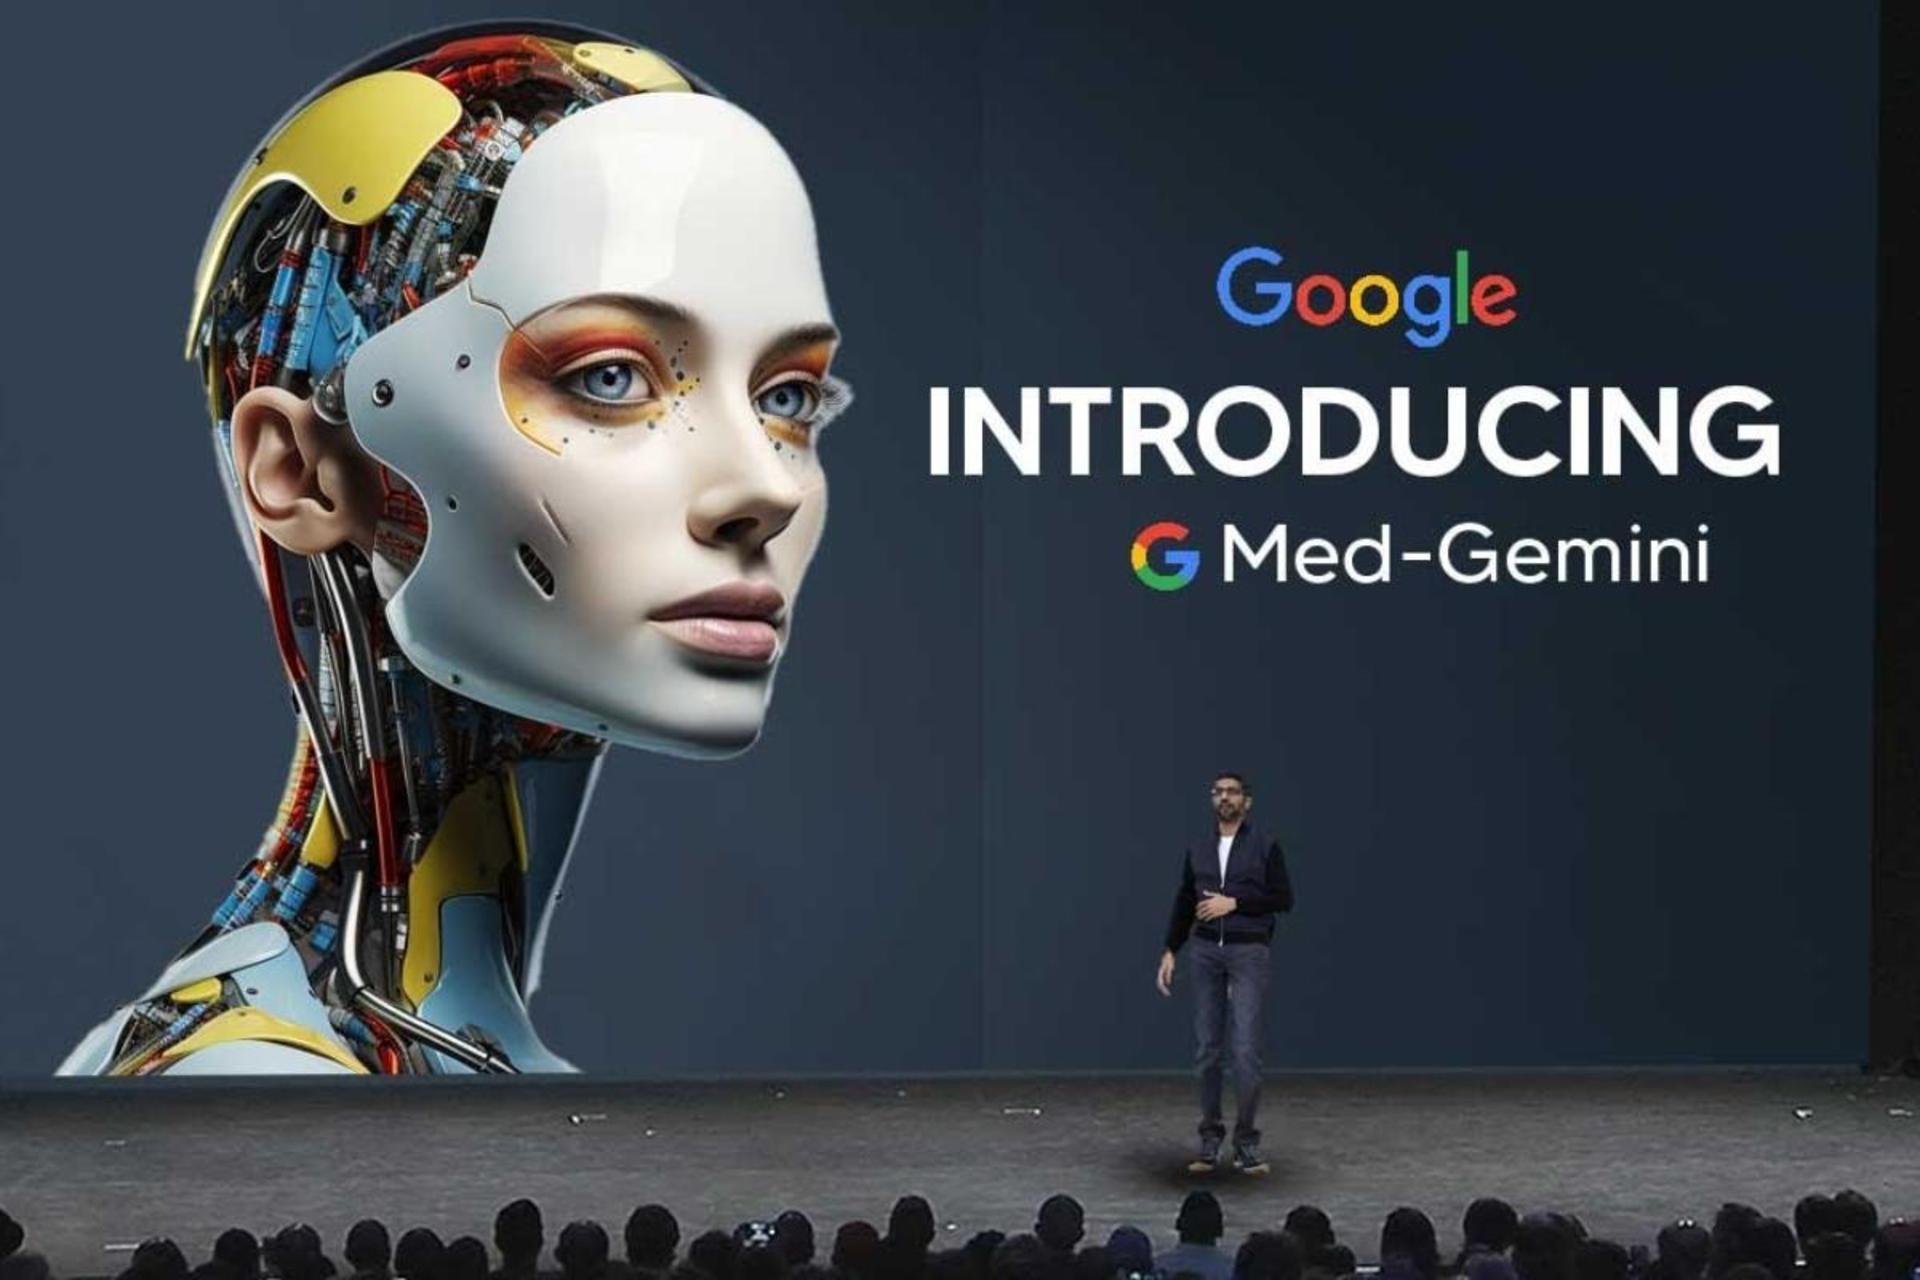 مدیر گوگل درحال معرفی هوش مصنوعی Med-Gemini